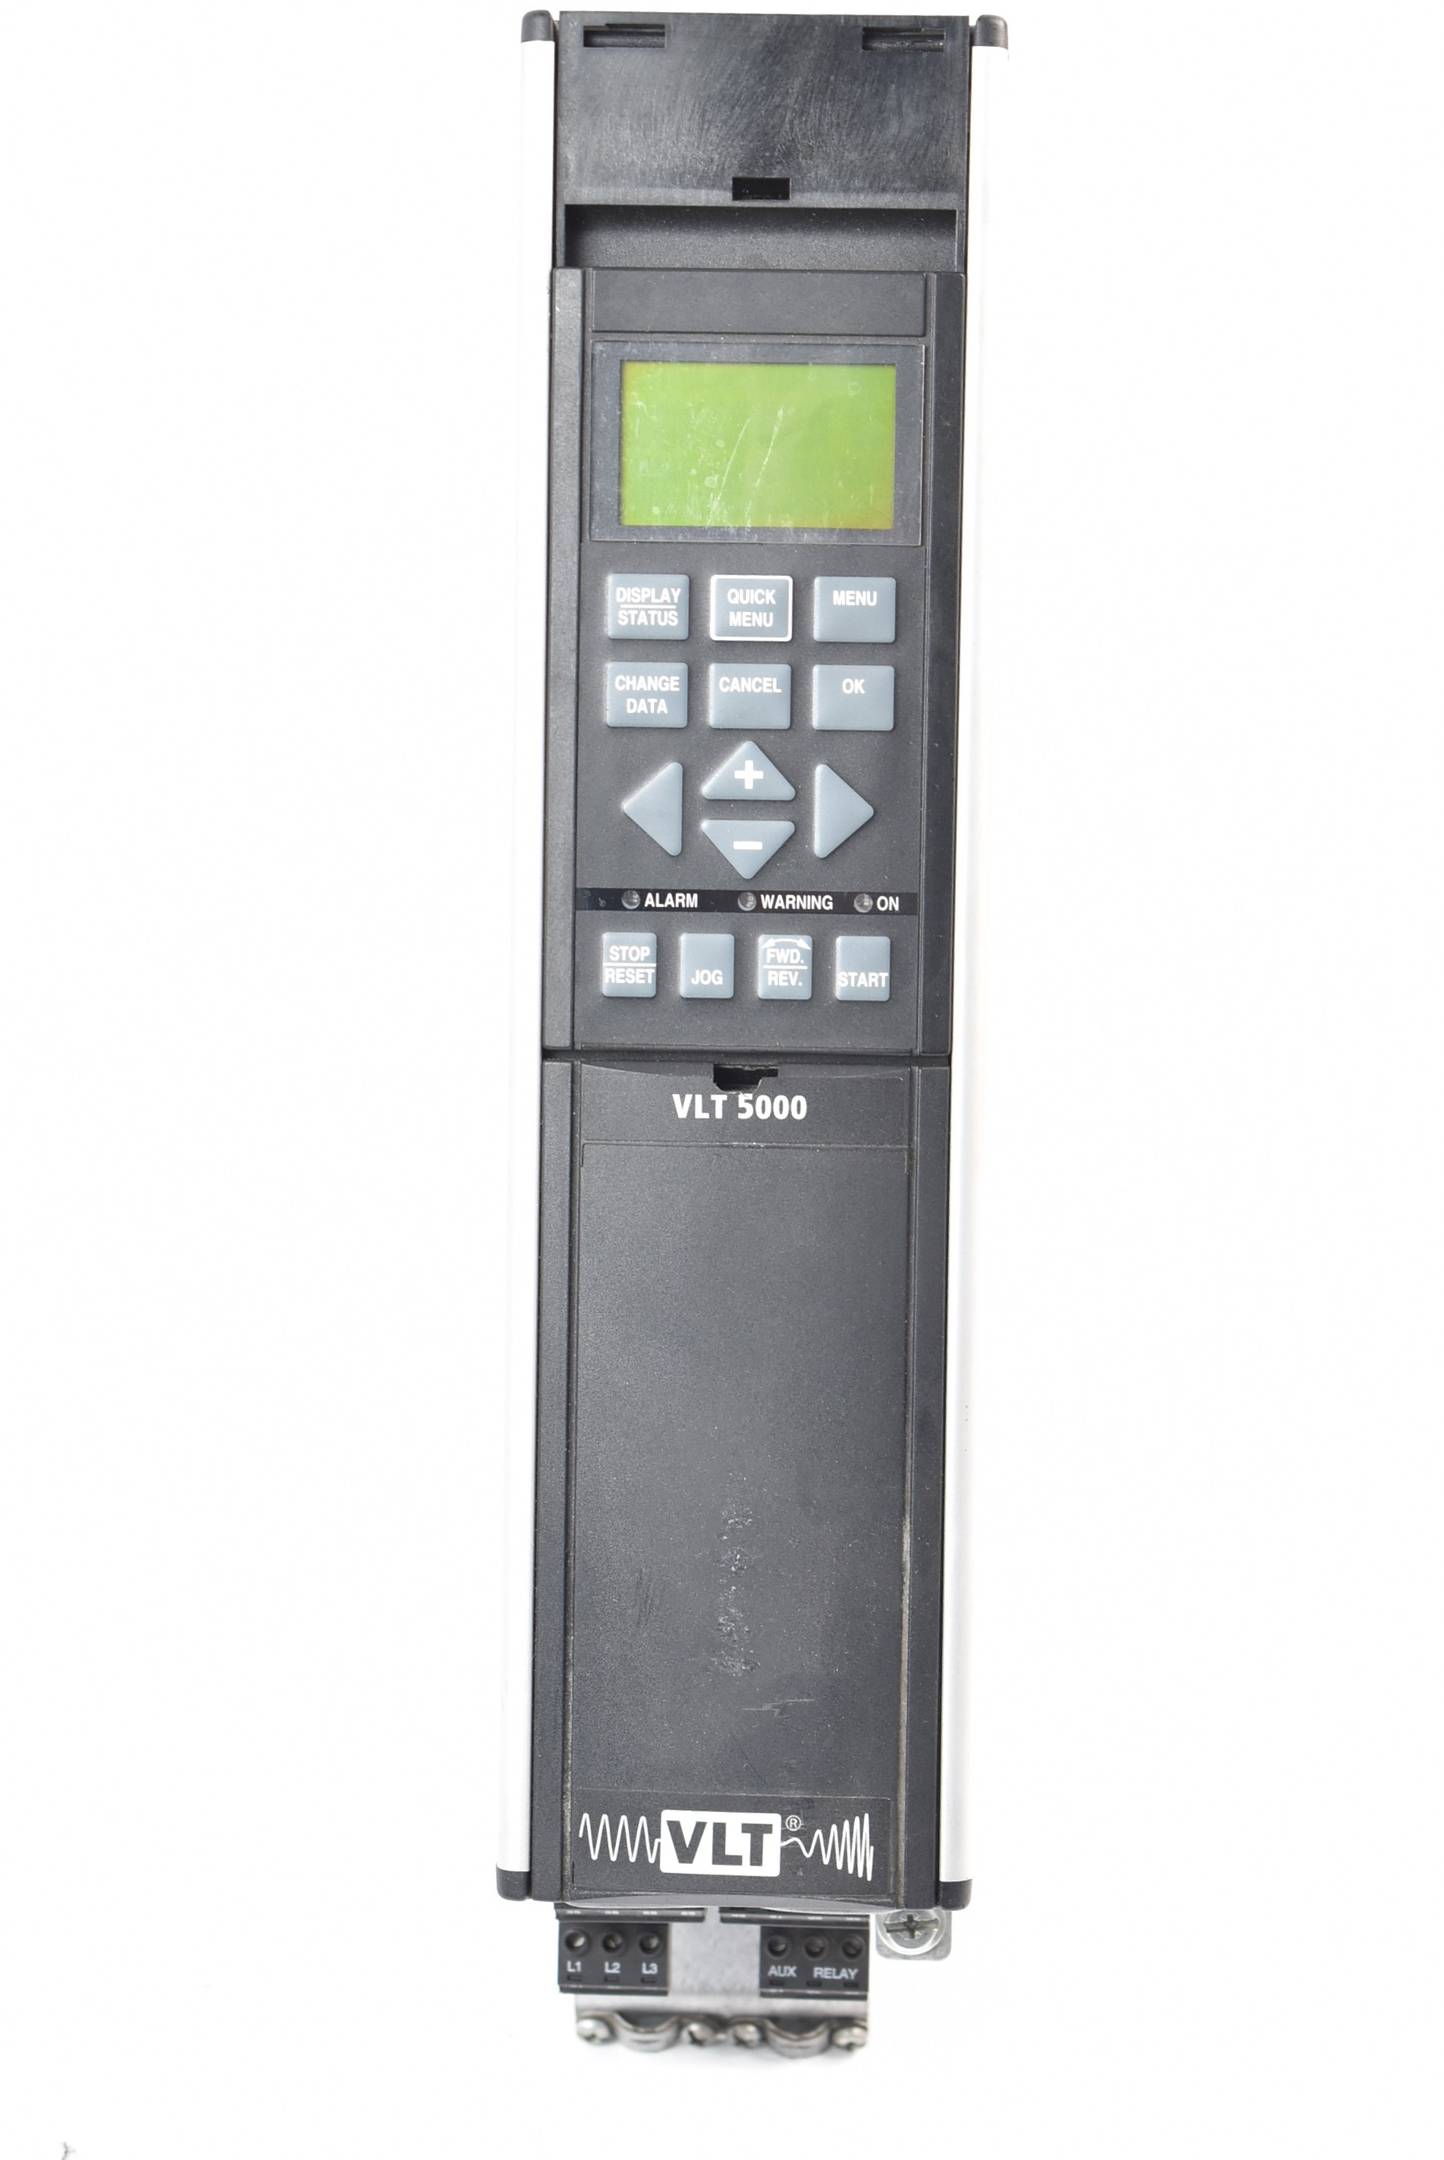 Danfoss VLT® 5000 Frequenzumrichter VLT5003 ST24 175Z0372 inkl. Bedienpanel